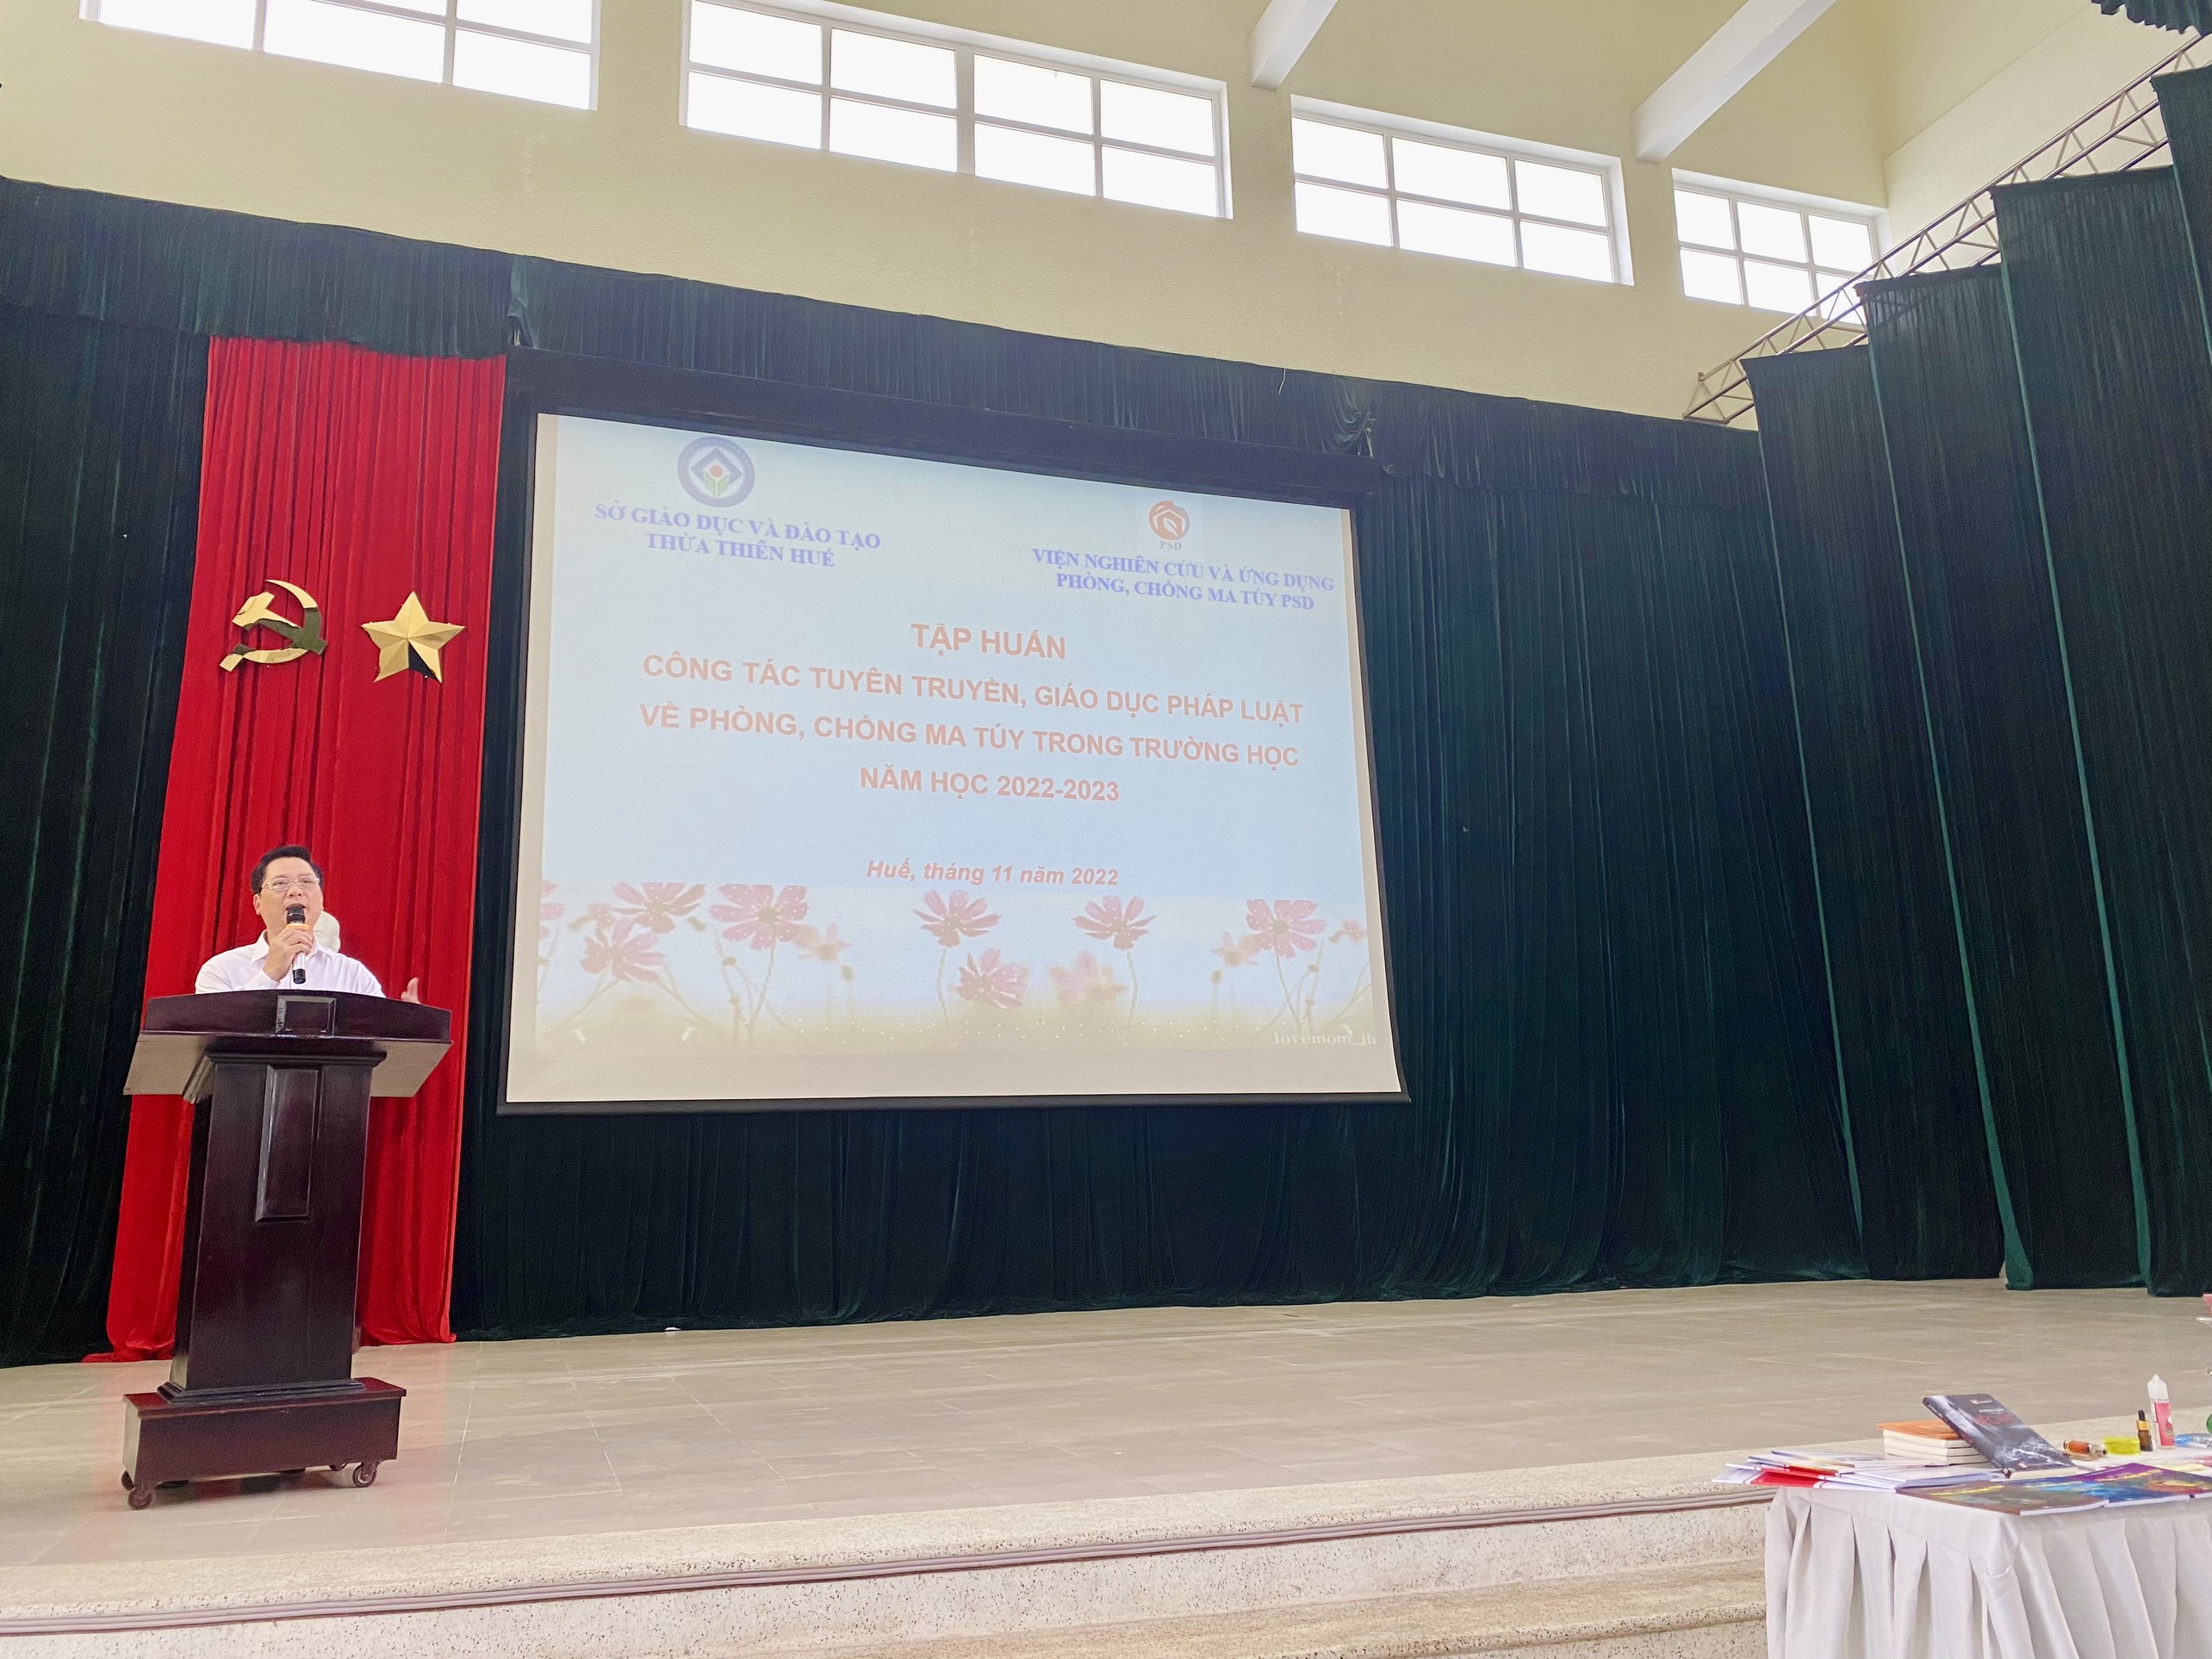 Thừa Thiên Huế: Hội nghị công tác tuyên truyền, tập huấn phòng chống ma túy trong trường học năm học 2022-2023